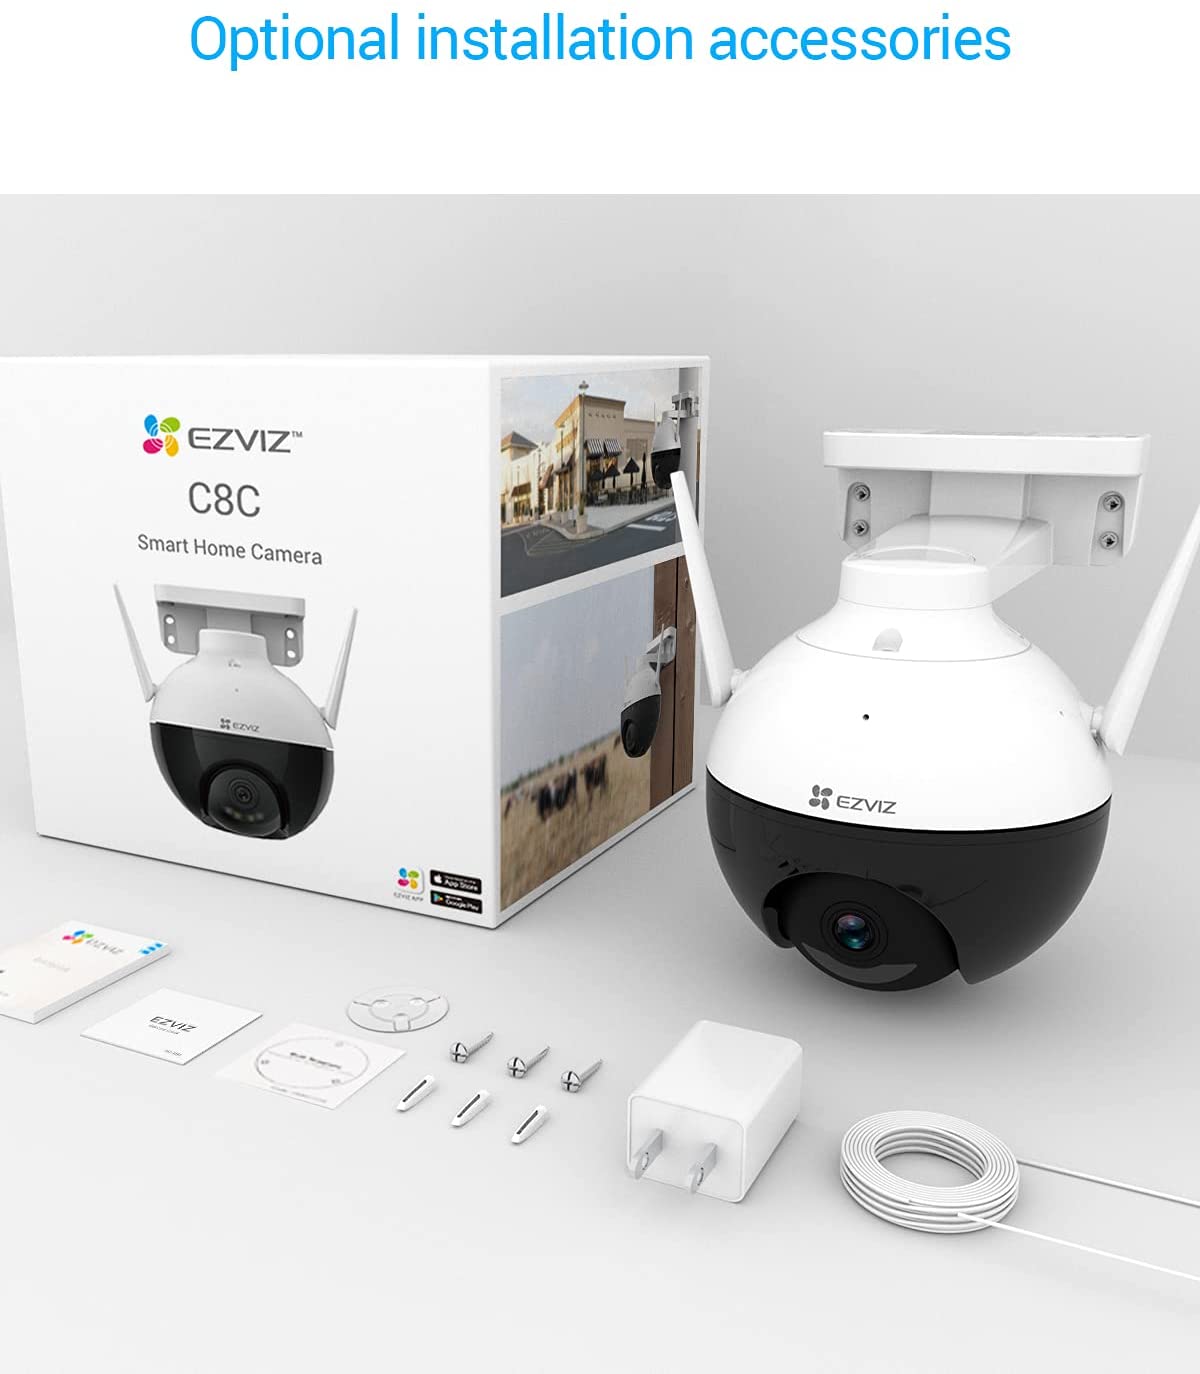 Caméra de surveillance intérieure motorisé sans fil EZVIZ C6n, blanc